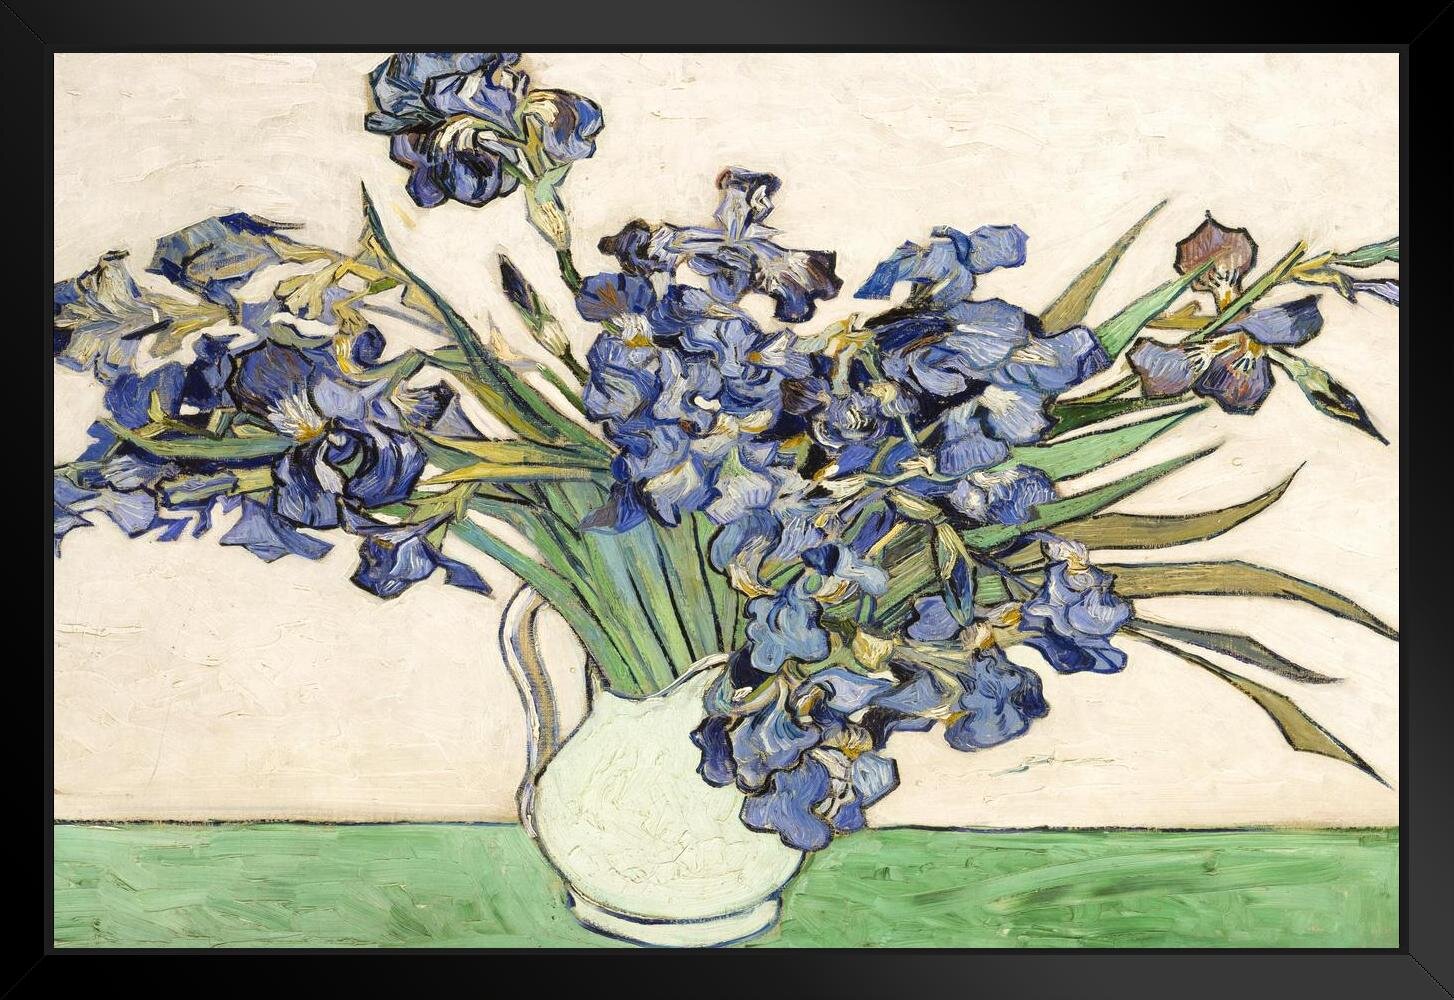 Vincent van Gogh, Irises